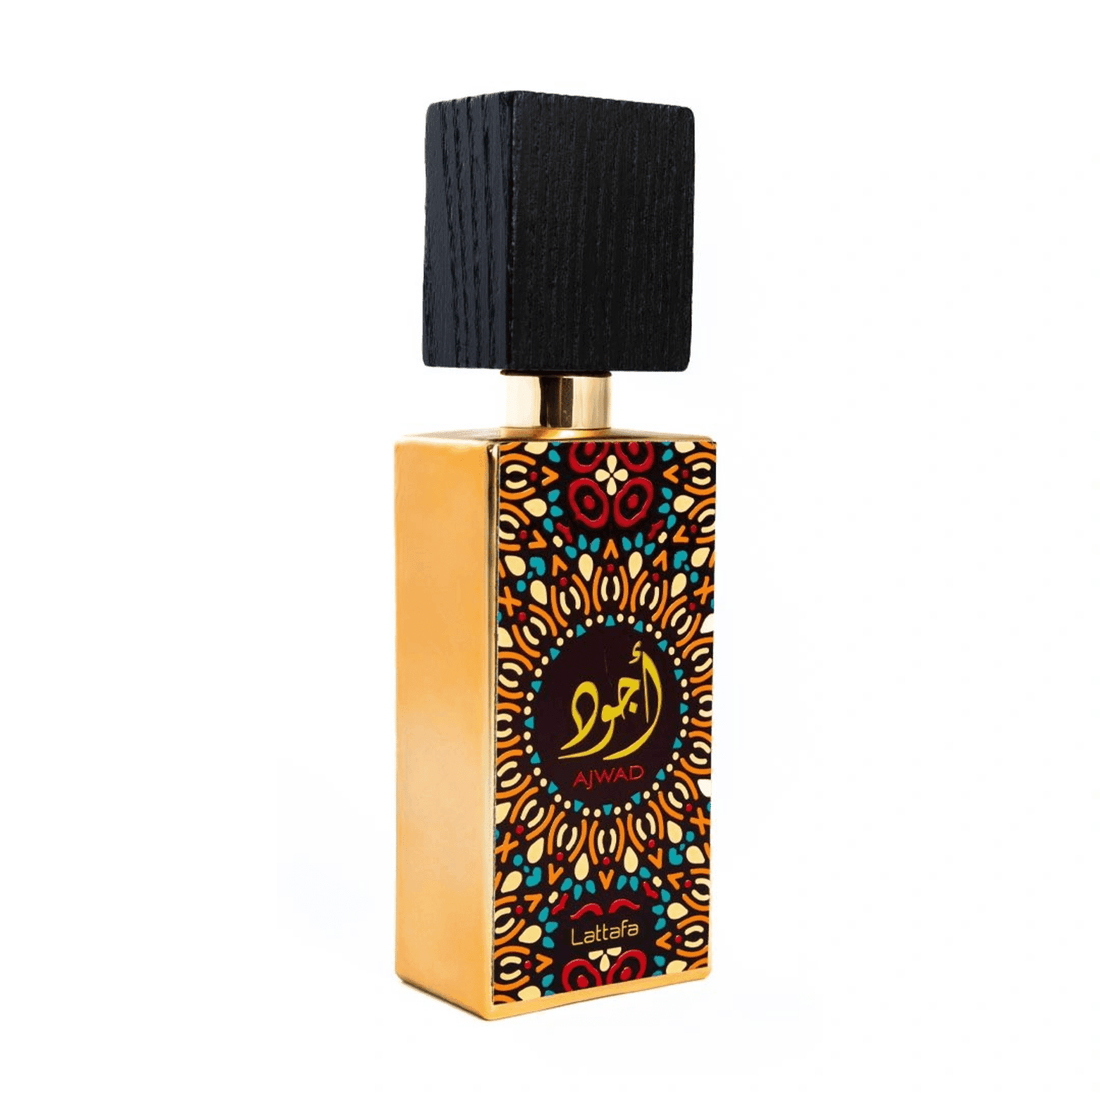 Eye-catching packaging of Lattafa Ajwad perfume